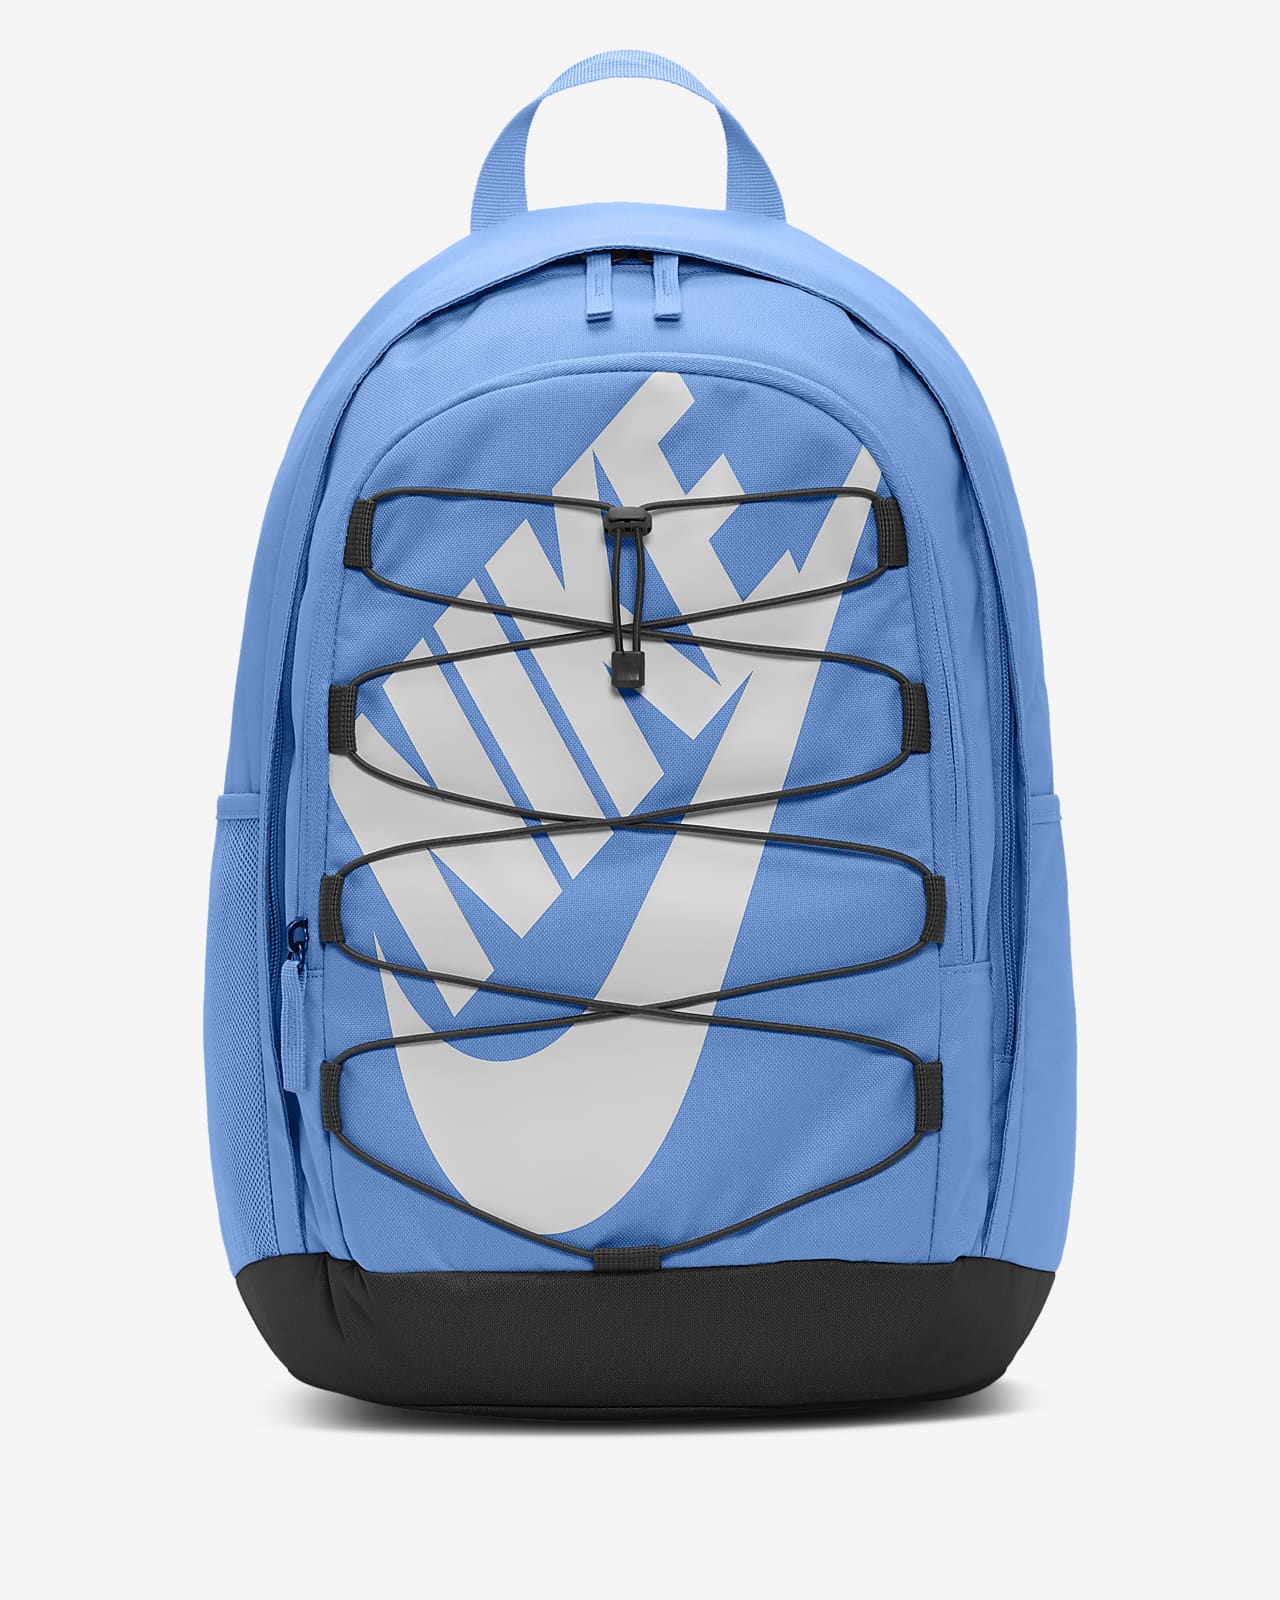 Nike backpack | Blue nike backpack, Nike backpack, Backpacks